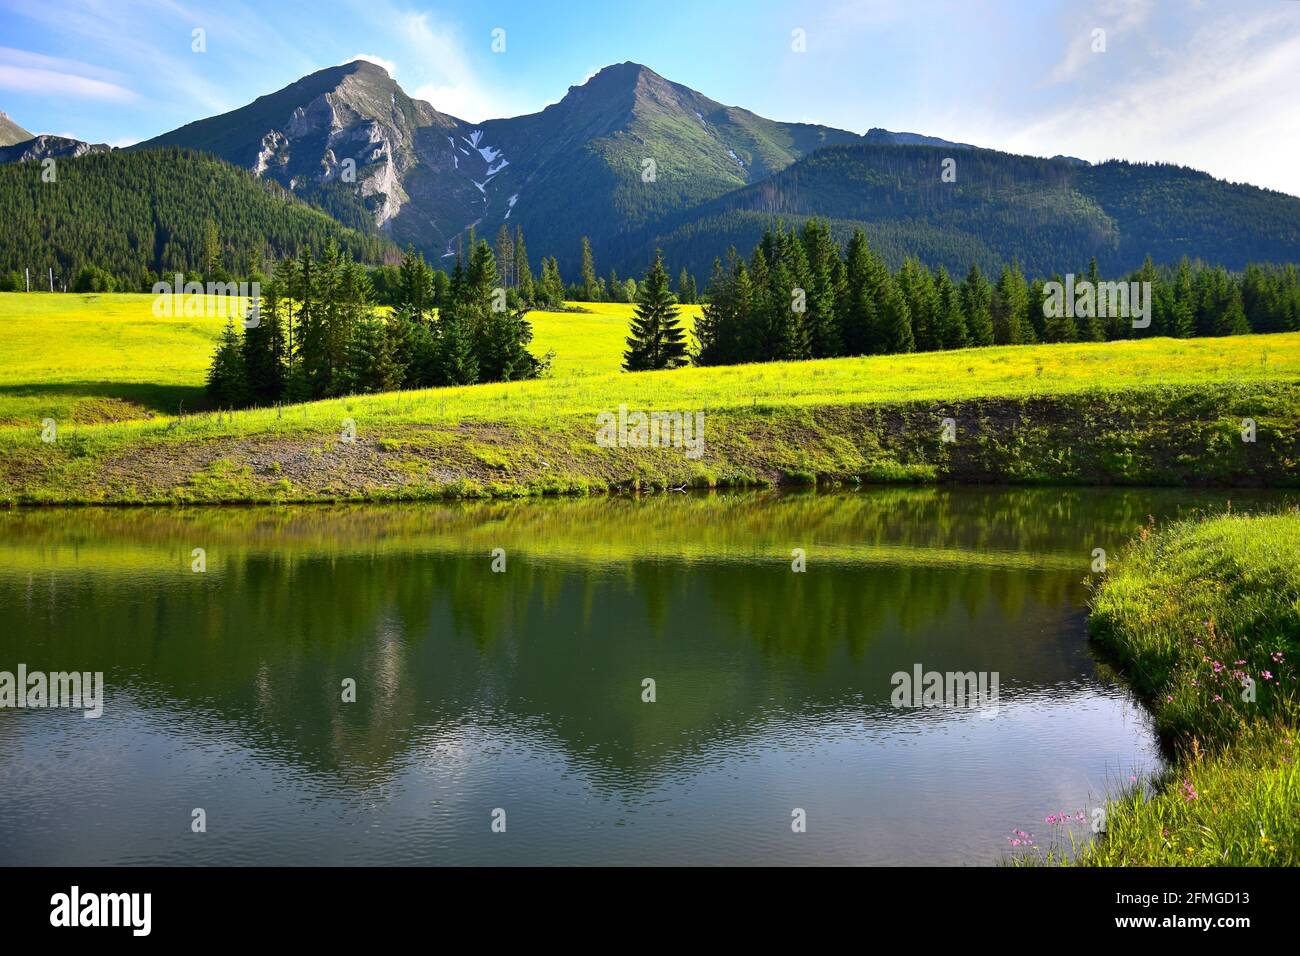 Le due montagne più alte del Belianske Tatra, Havran e Zdiarska vidla, al sole della sera. Un prato di fiori gialli e uno stagno di fronte. Foto Stock